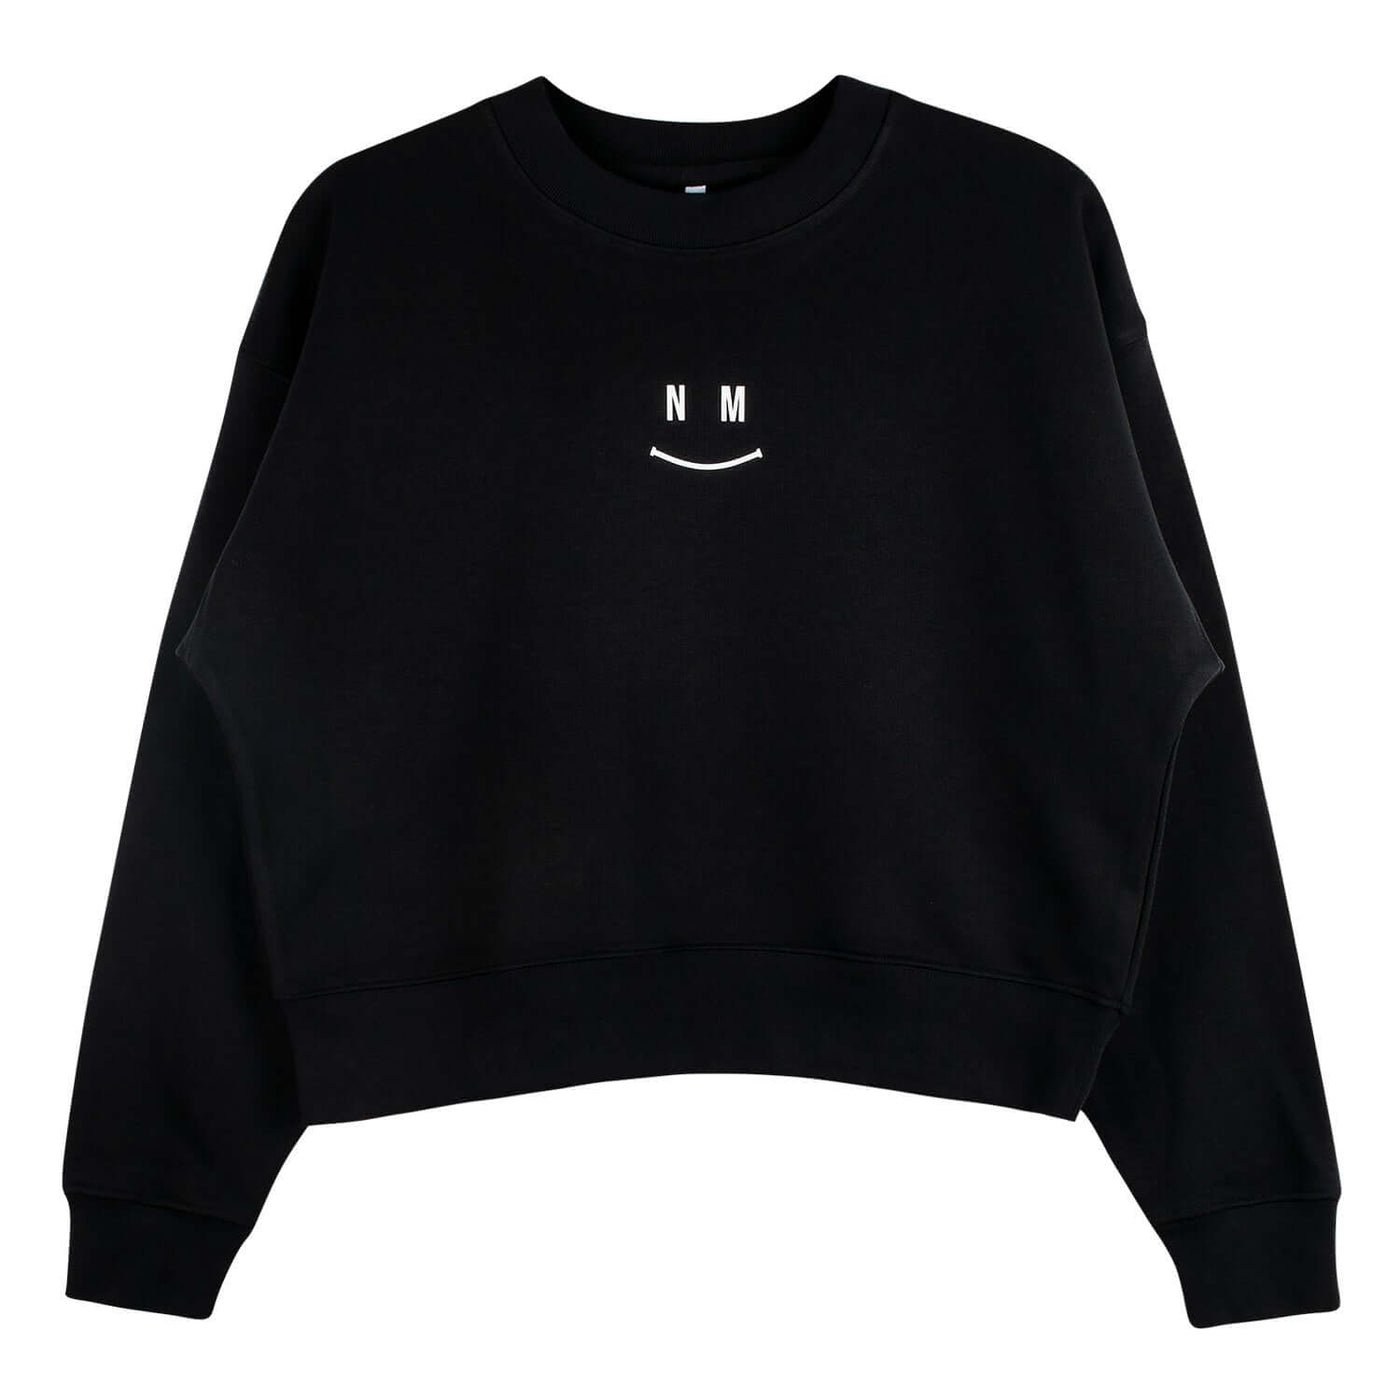 Crop Sweatshirt "Smile" - black (Front)